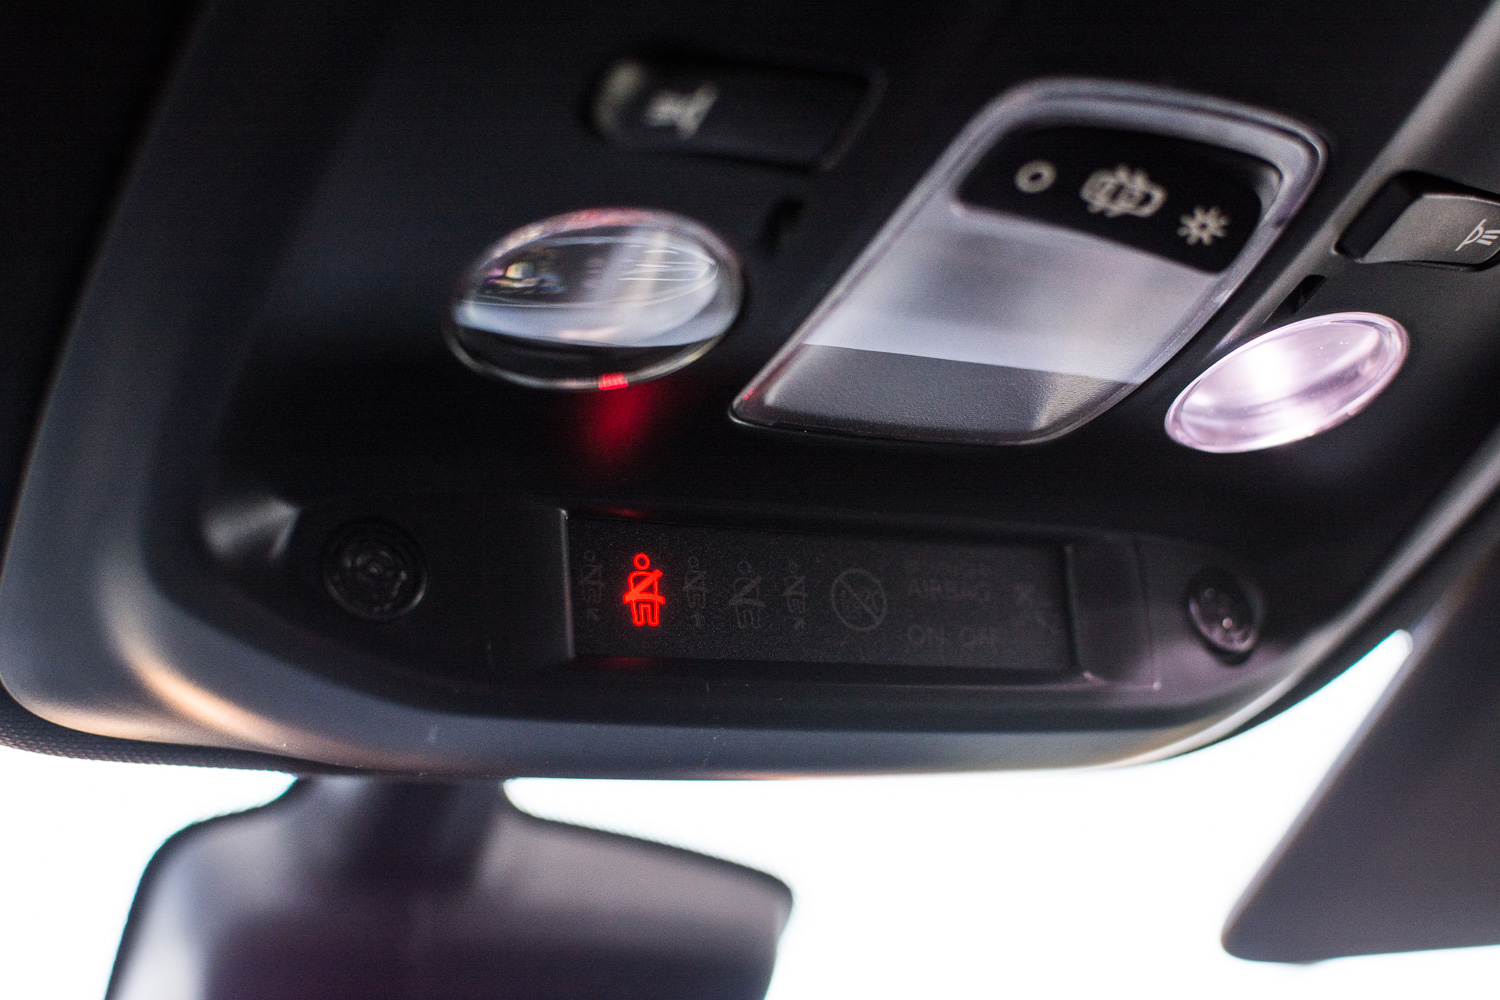 Peugeot 308 GTi sprawdzamy system multimedialny